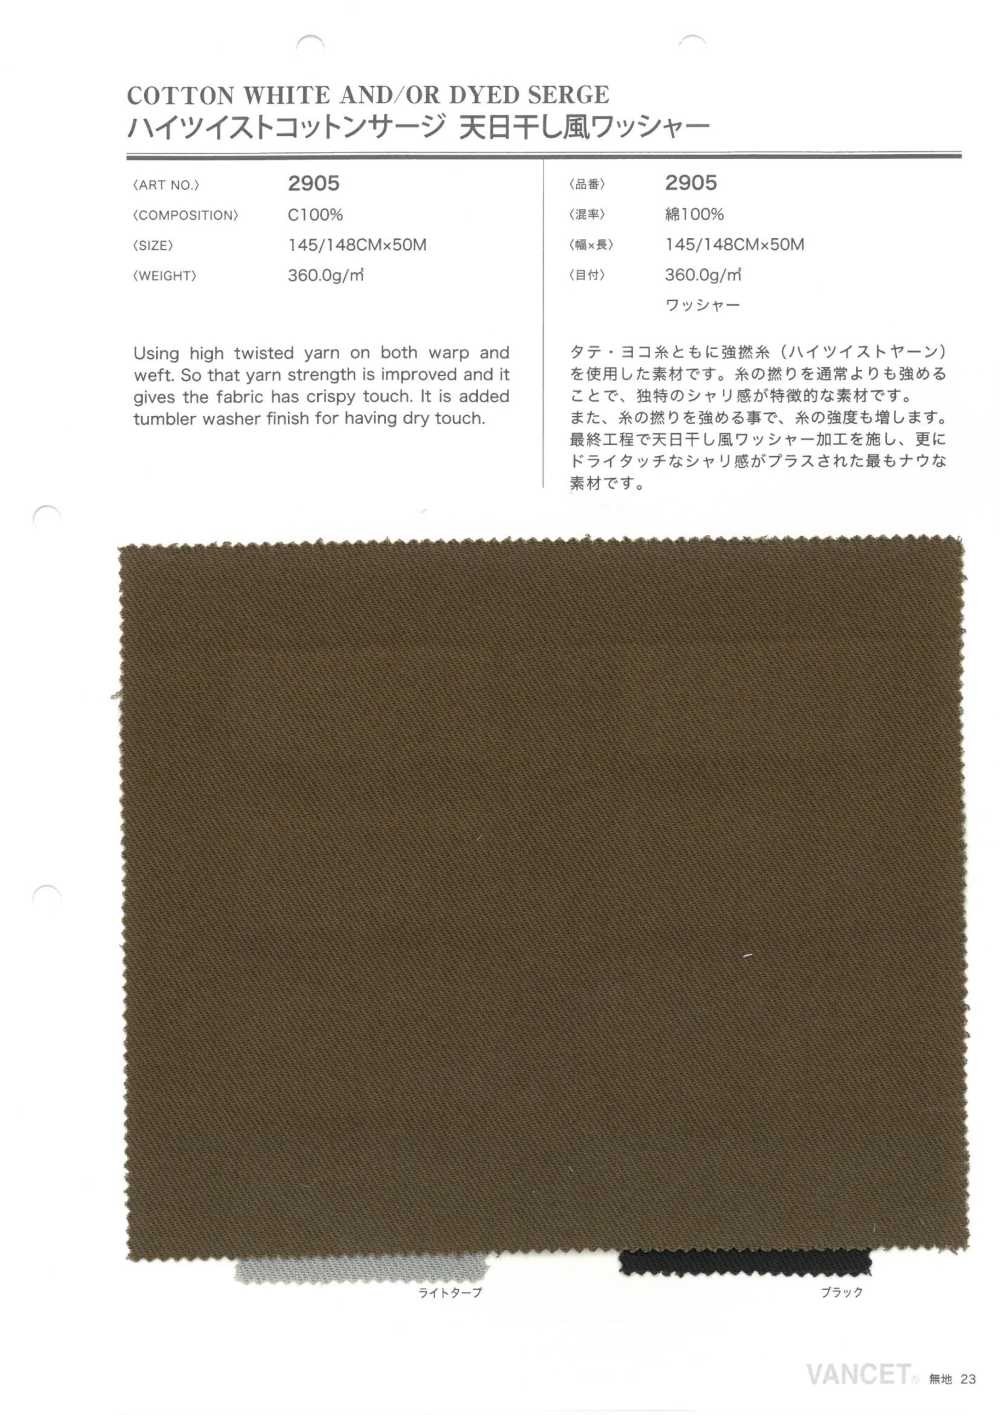 2905 Procesamiento De Lavadora Secada Al Sol Serge De Algodón De Alta Torsión[Fabrica Textil] VANCET